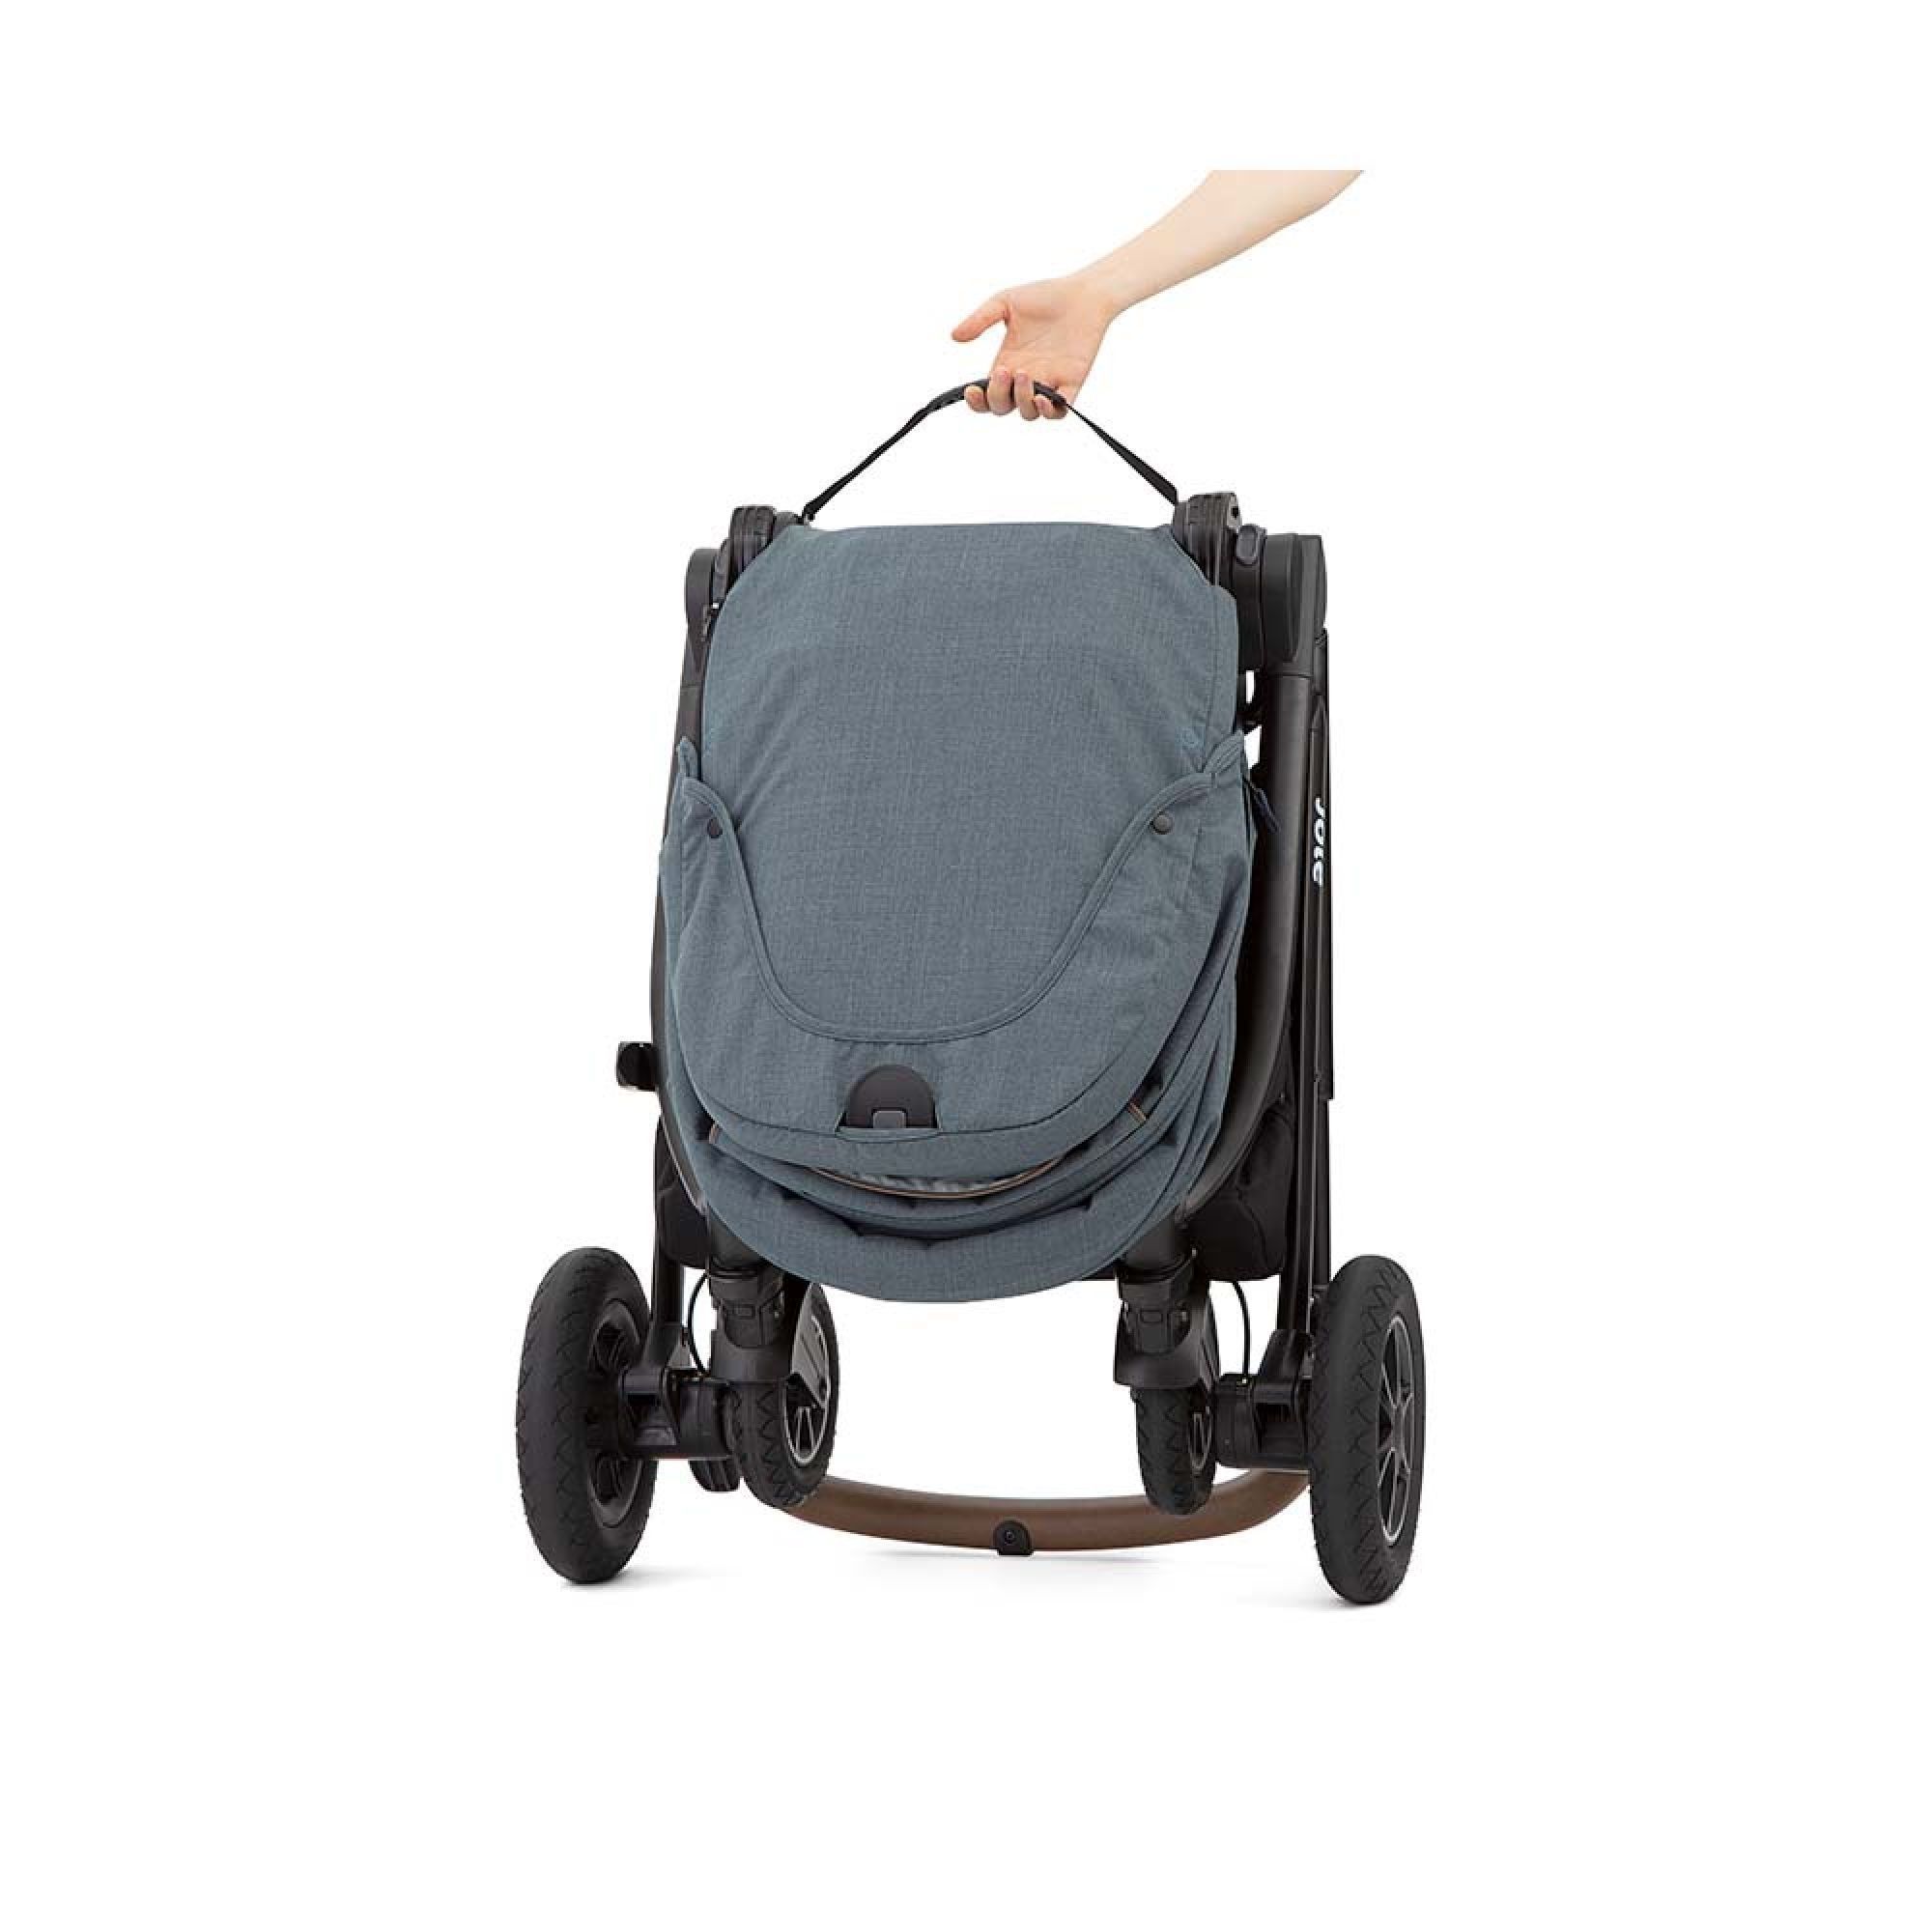 Puériculture - Poussette, sac a langer, siège auto pour bébé